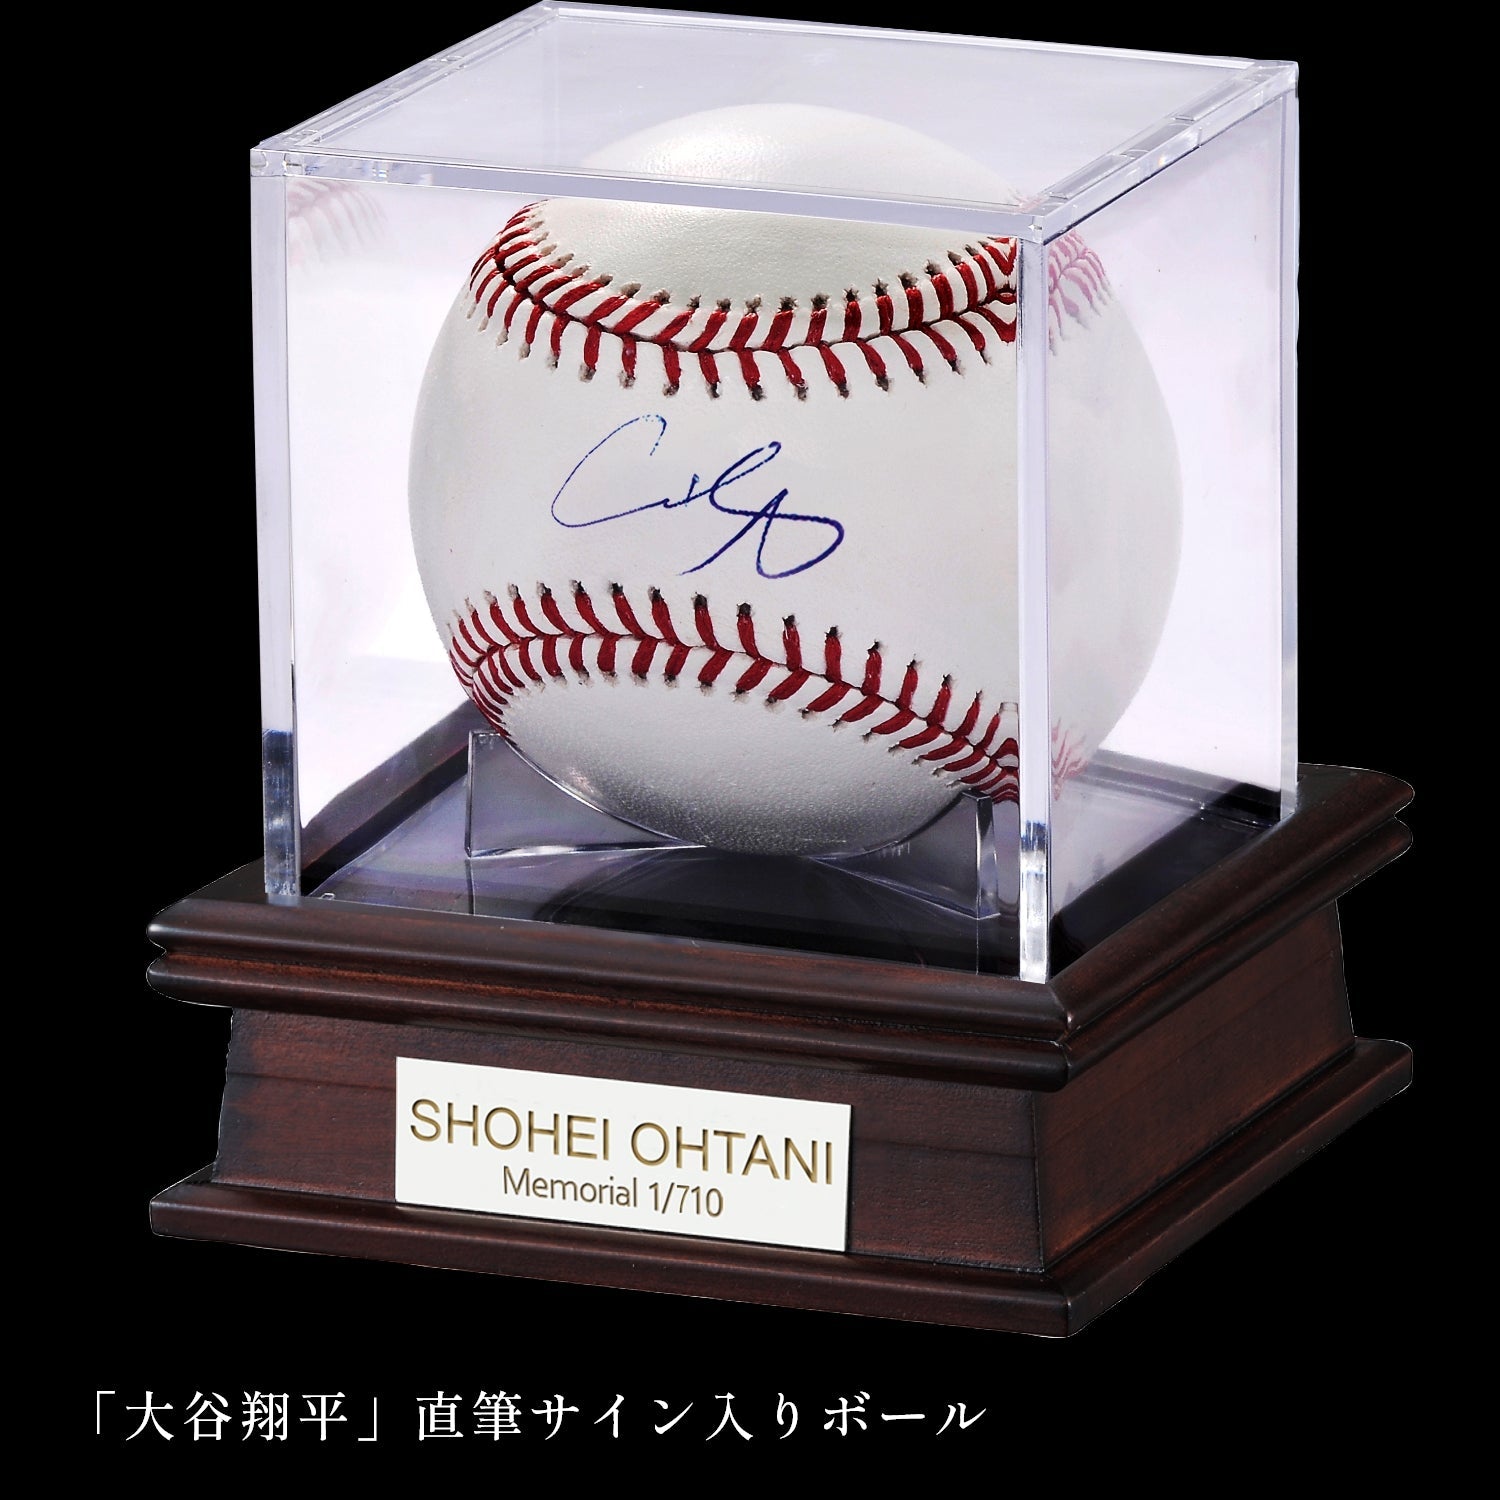 大谷翔平 直筆サイン入り MLB公式ボール - 公式通販サイト「アニメコレクション/Anime Collection」